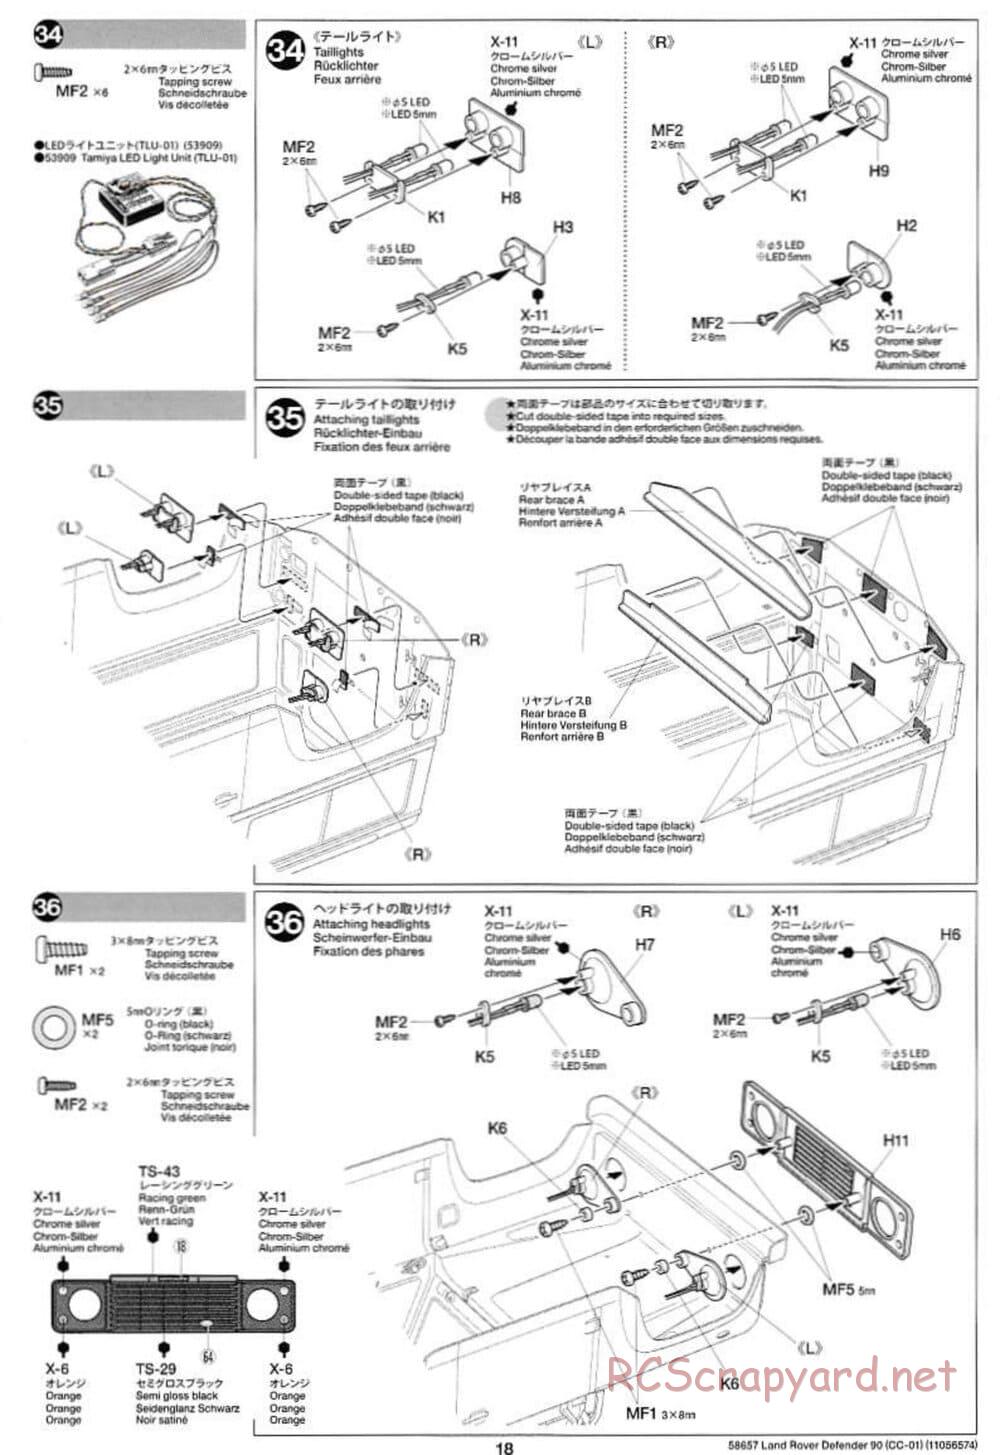 Tamiya - Land Rover Defender 90 - CC-01 Chassis - Manual - Page 18